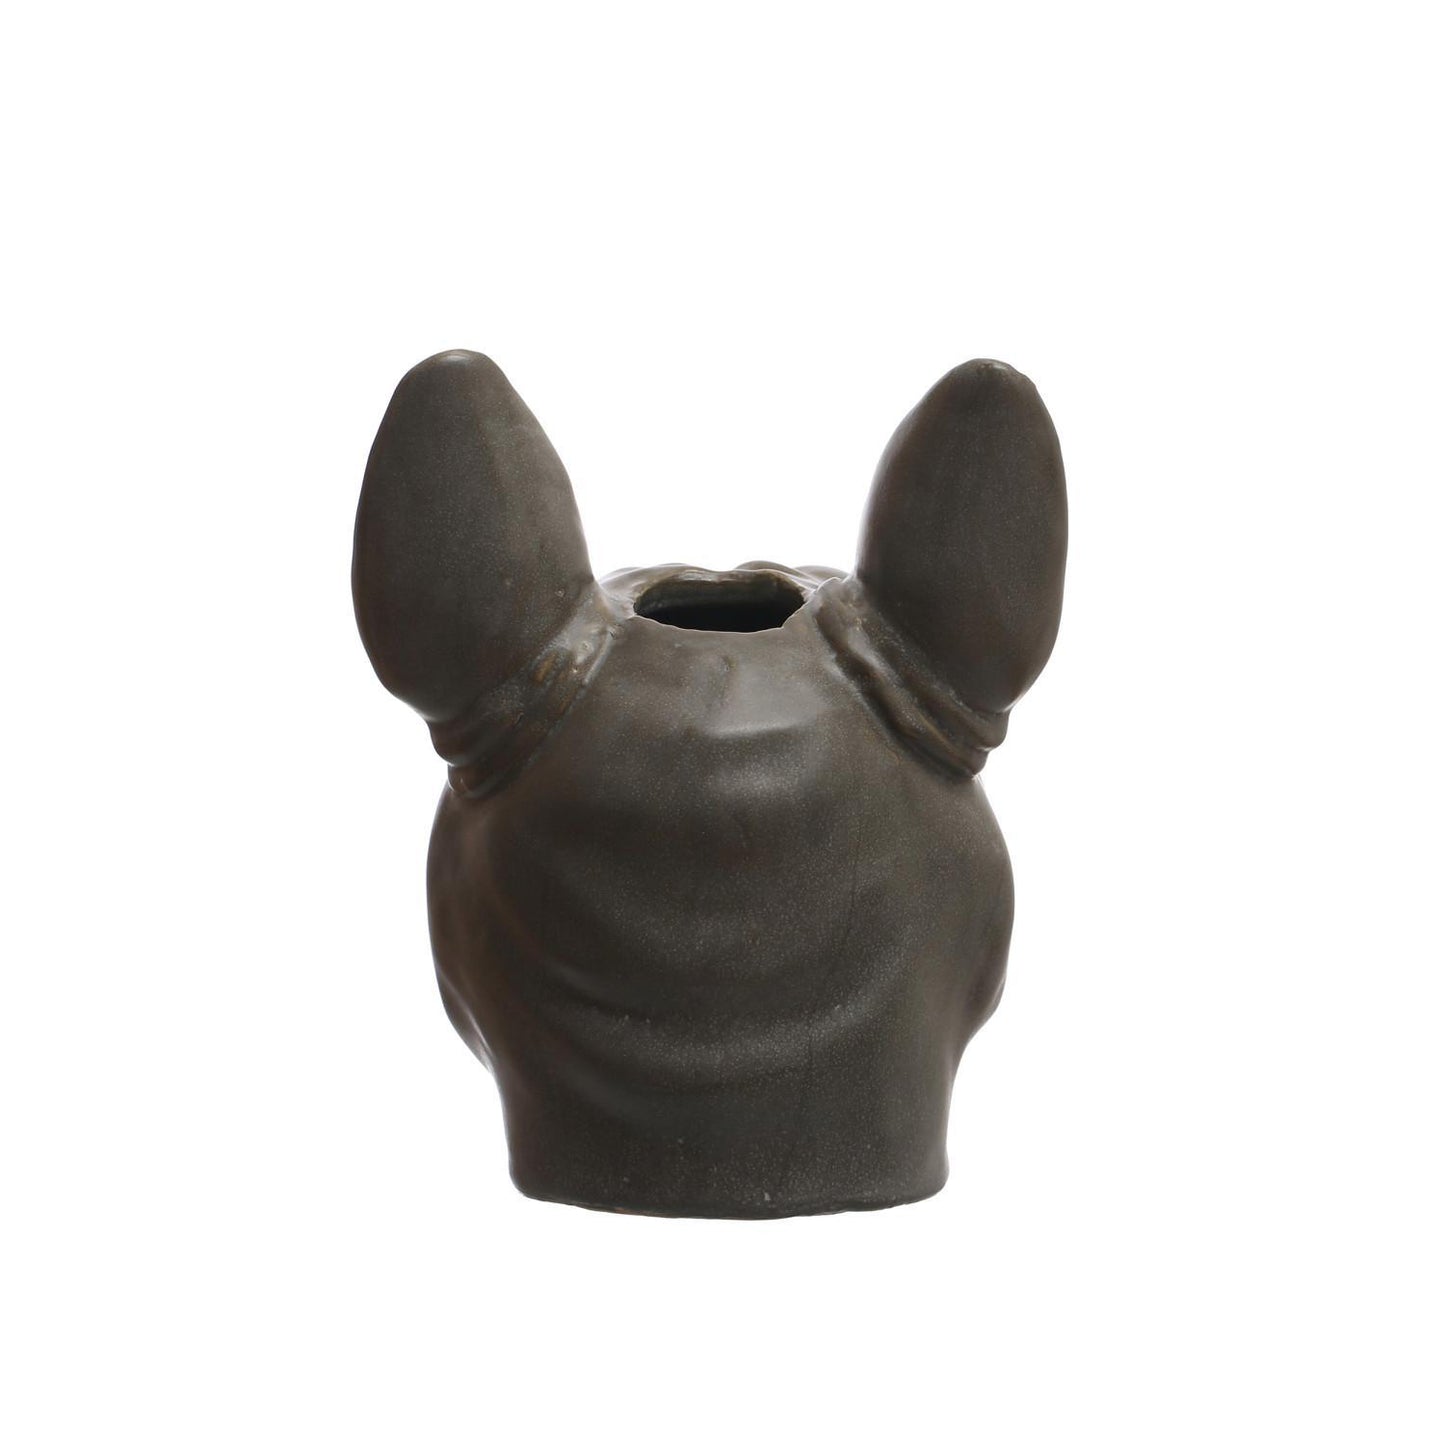 Stoneware French Bulldog Head Vase